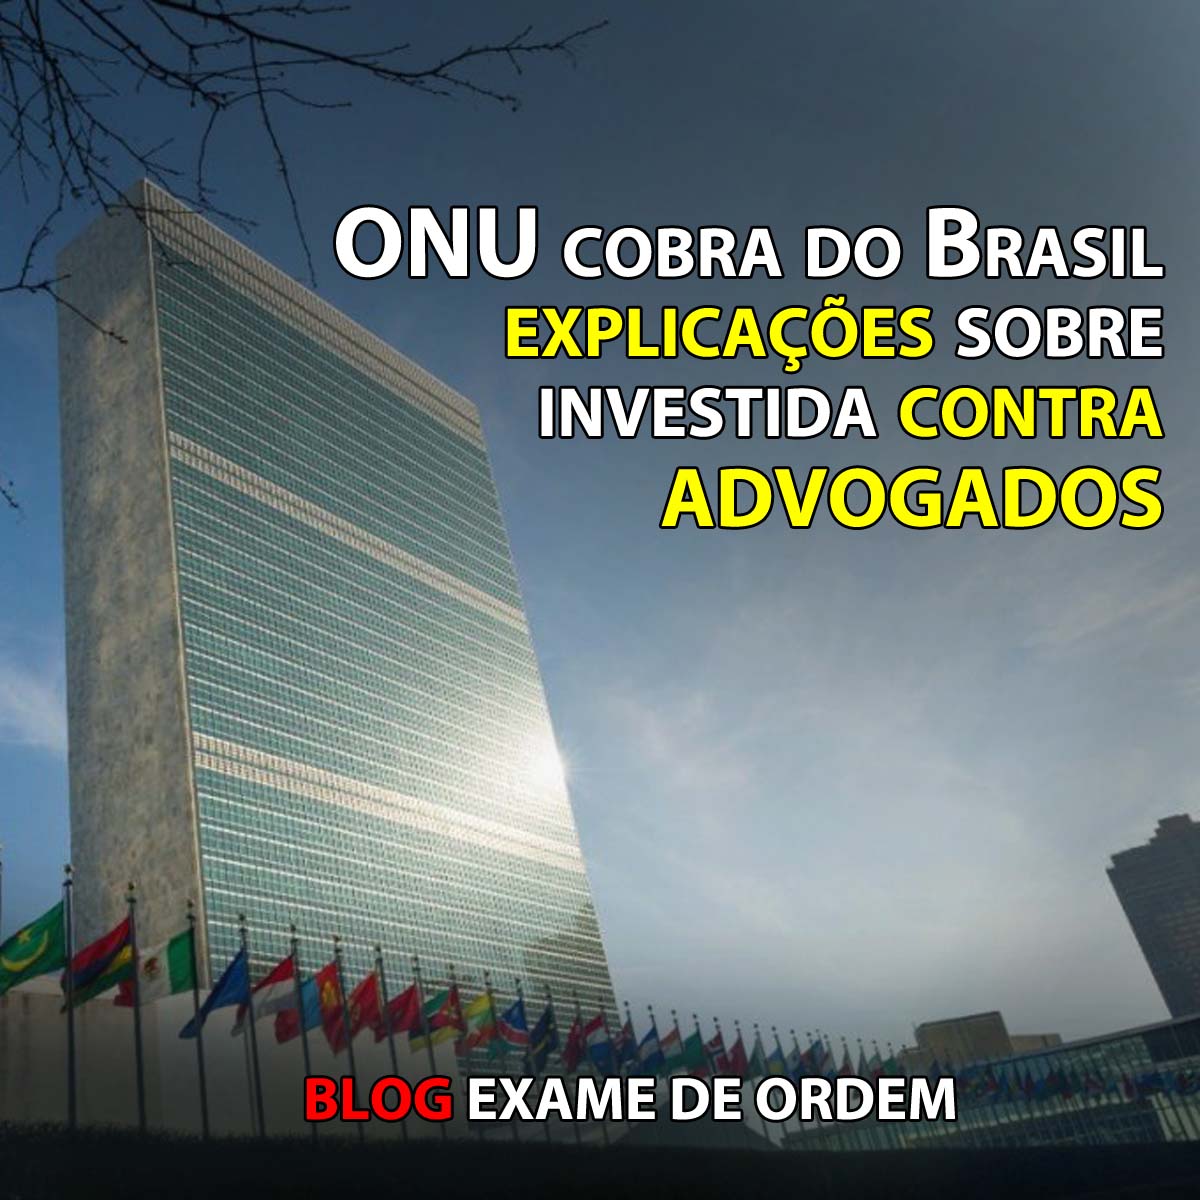 ONU cobra do Brasil explicaes sobre investida contra advogados